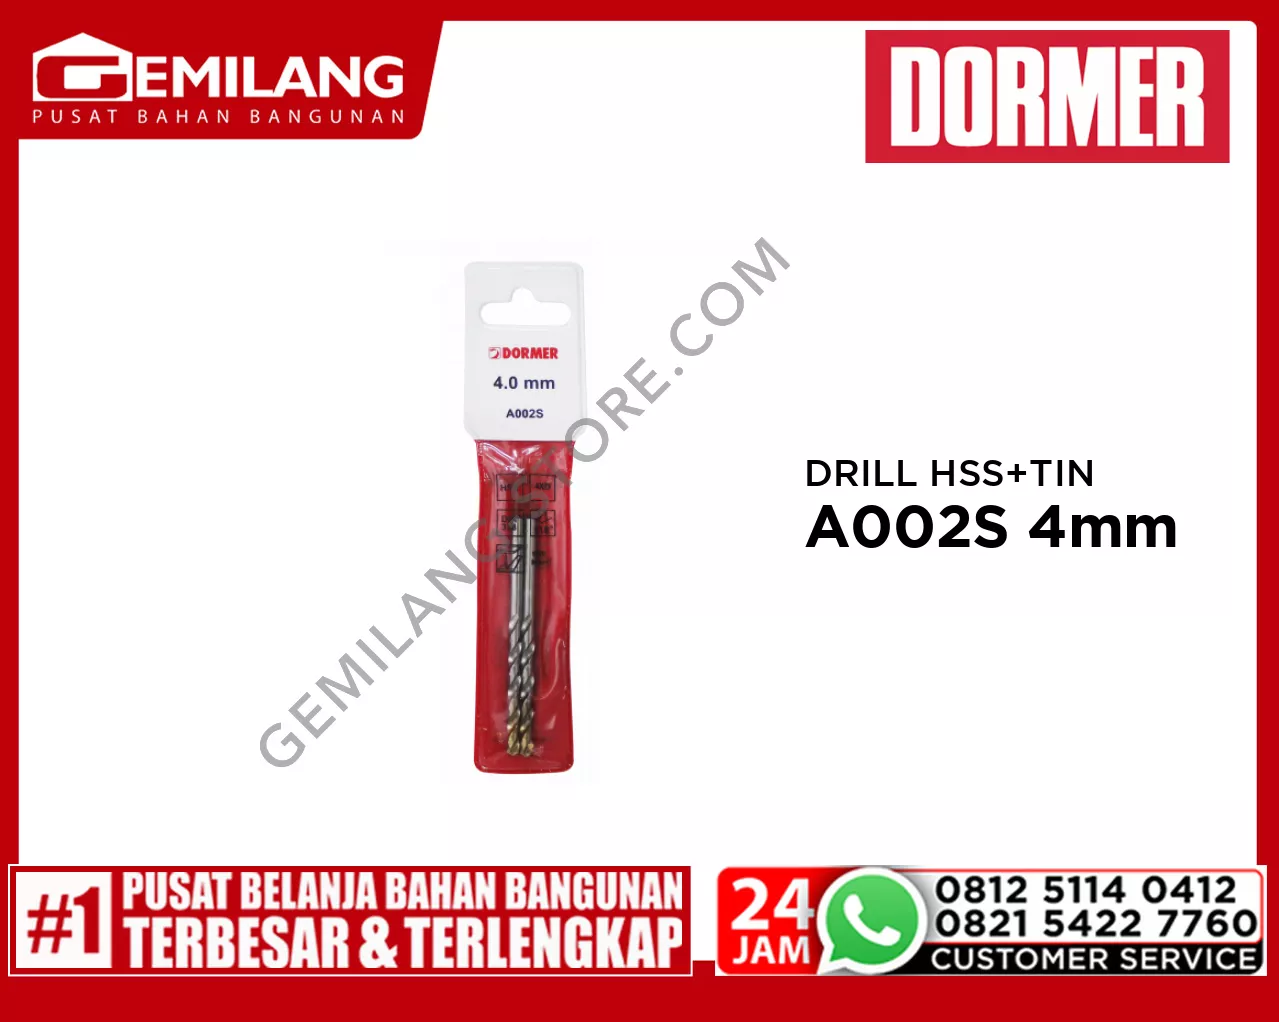 DORMER DRILL (POUCH) HSS + TIN A002S 4mm